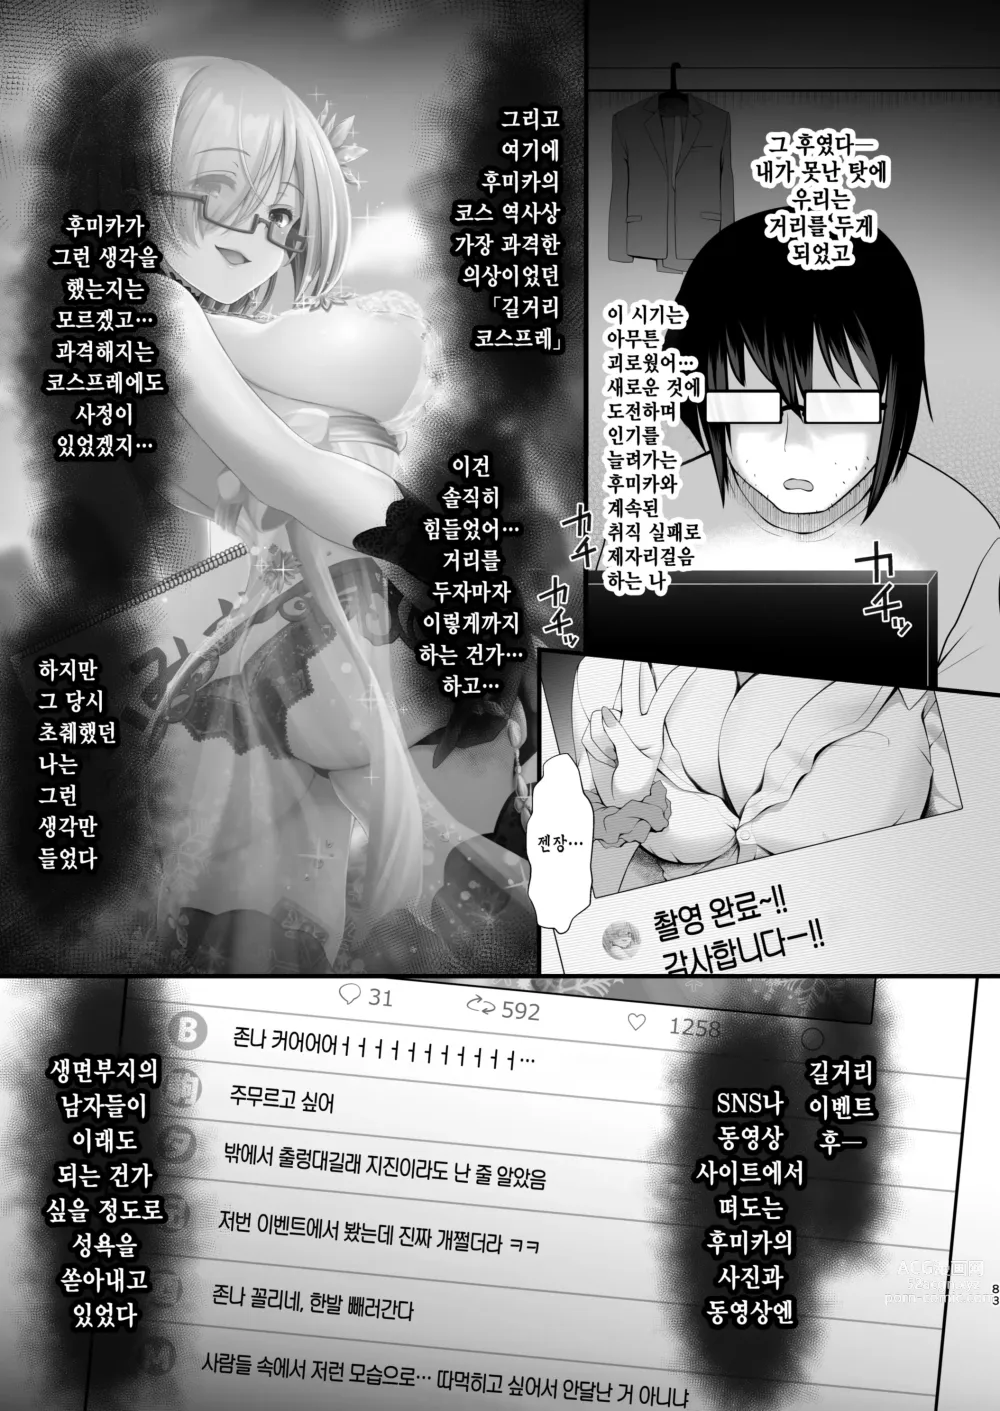 Page 9 of doujinshi 따끈따끈한 신혼 장유 유부녀 코스플레이어 후미카 첫날밤은 남편이 아닌... 양구멍 생삽입 웨딩 개인 촬영